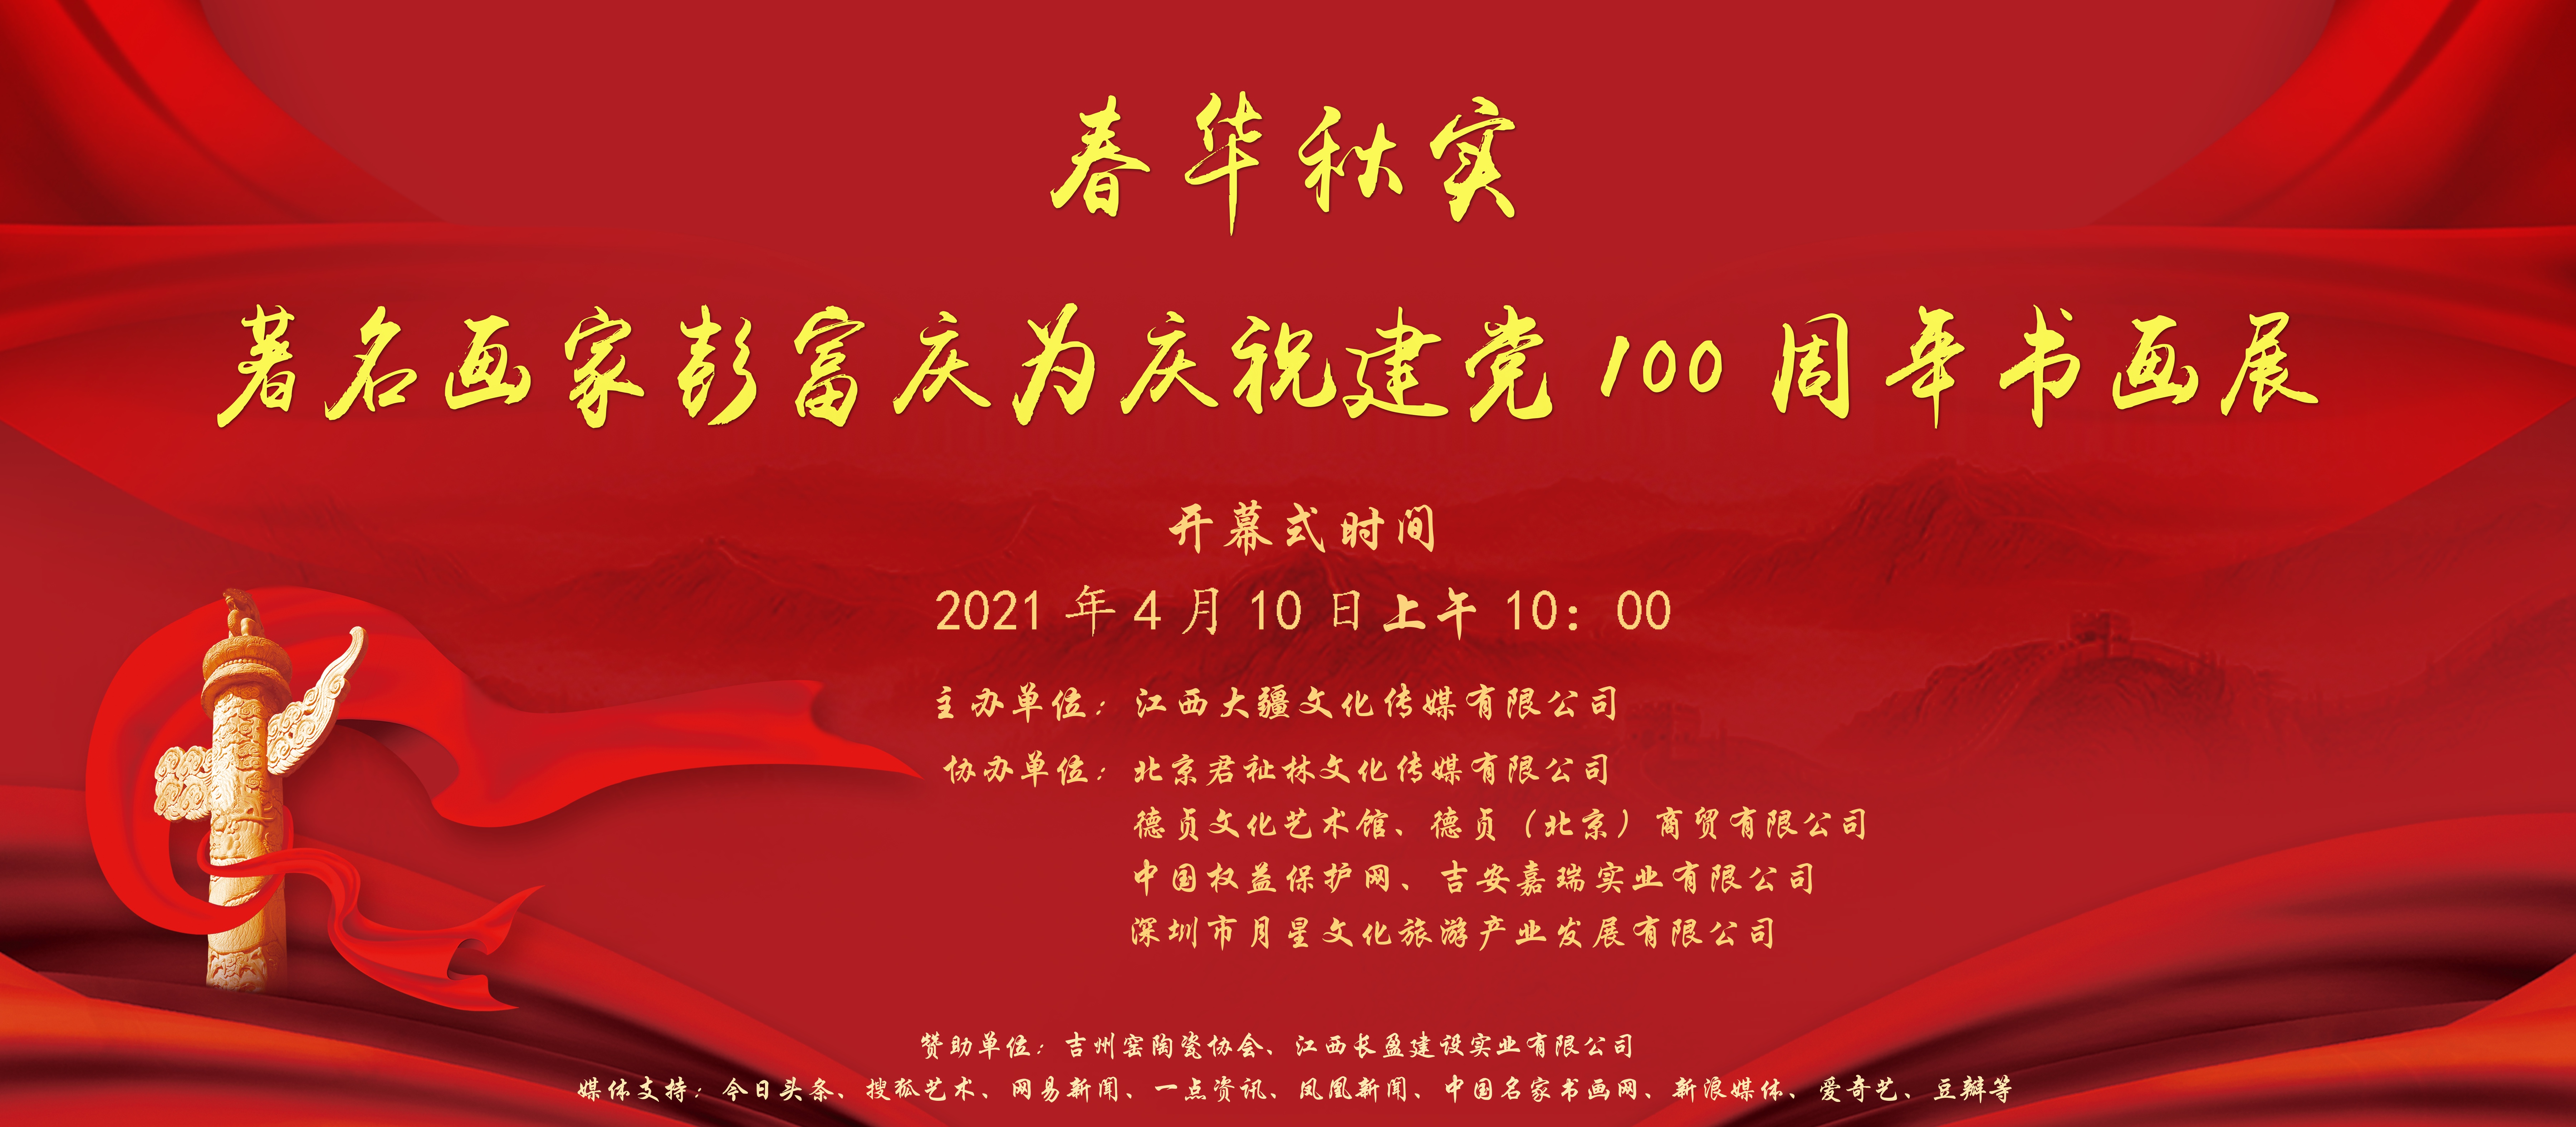 《春华秋实—著名画家彭富庆为庆祝建党100周年书画展》隆重开幕